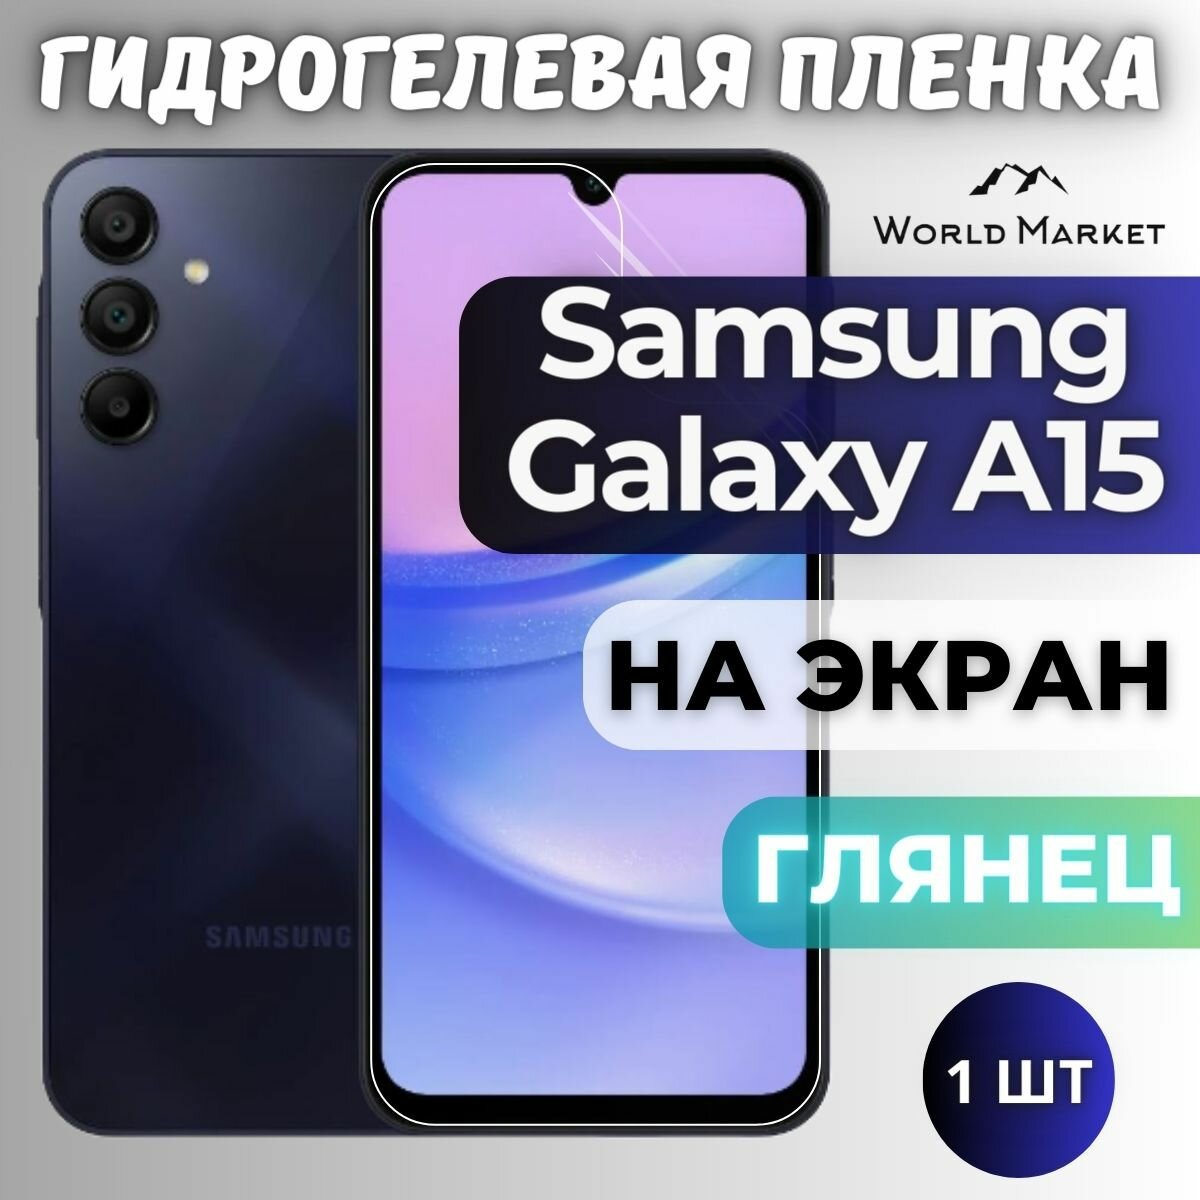 Защитная гидрогелевая пленка на Samsung Galaxy A15 4G/5G / глянцевая на экран / Противоударная бронепленка с эффектом восстановления на Самсунг Галакси А15